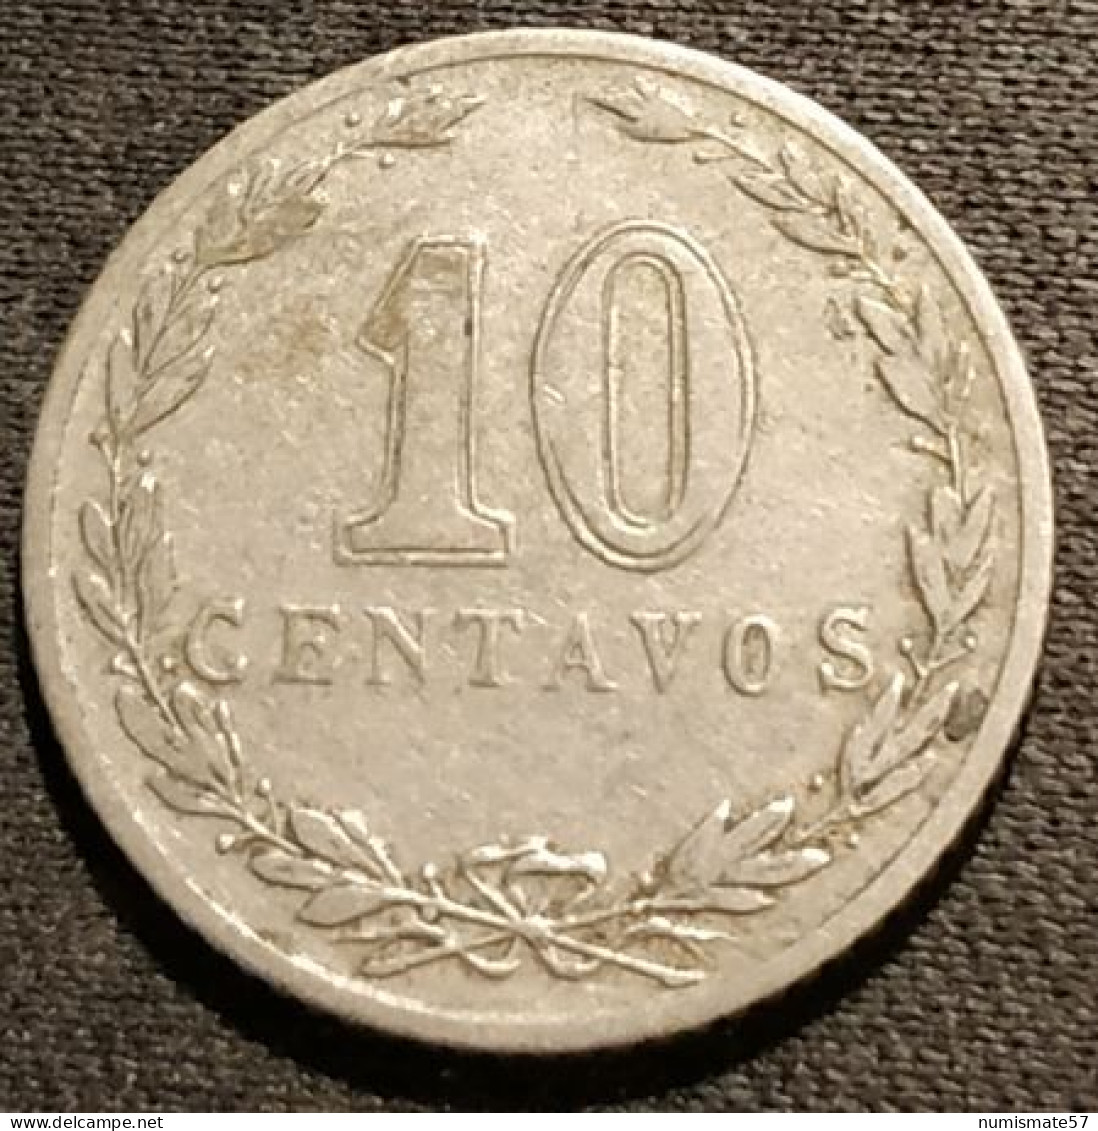 ARGENTINE - 10 CENTAVOS 1899 - KM 35 - Argentina - Argentina